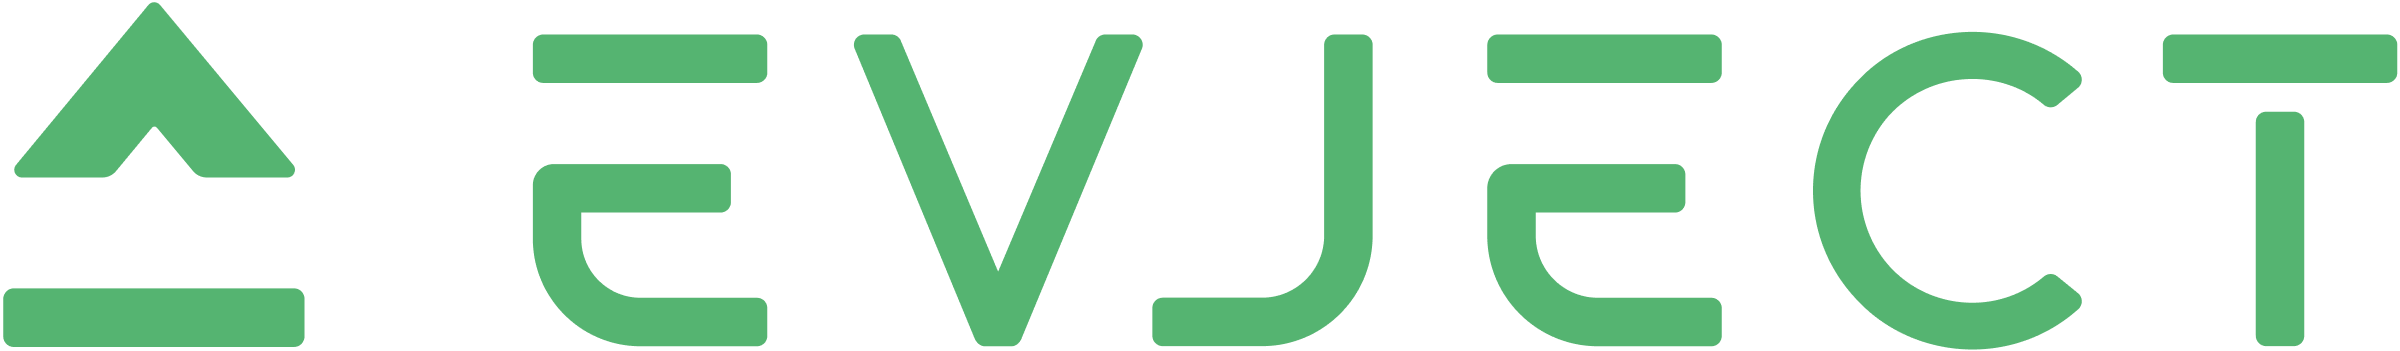 EVjectInc-20217906_EVject_Logo_Green-Large.png